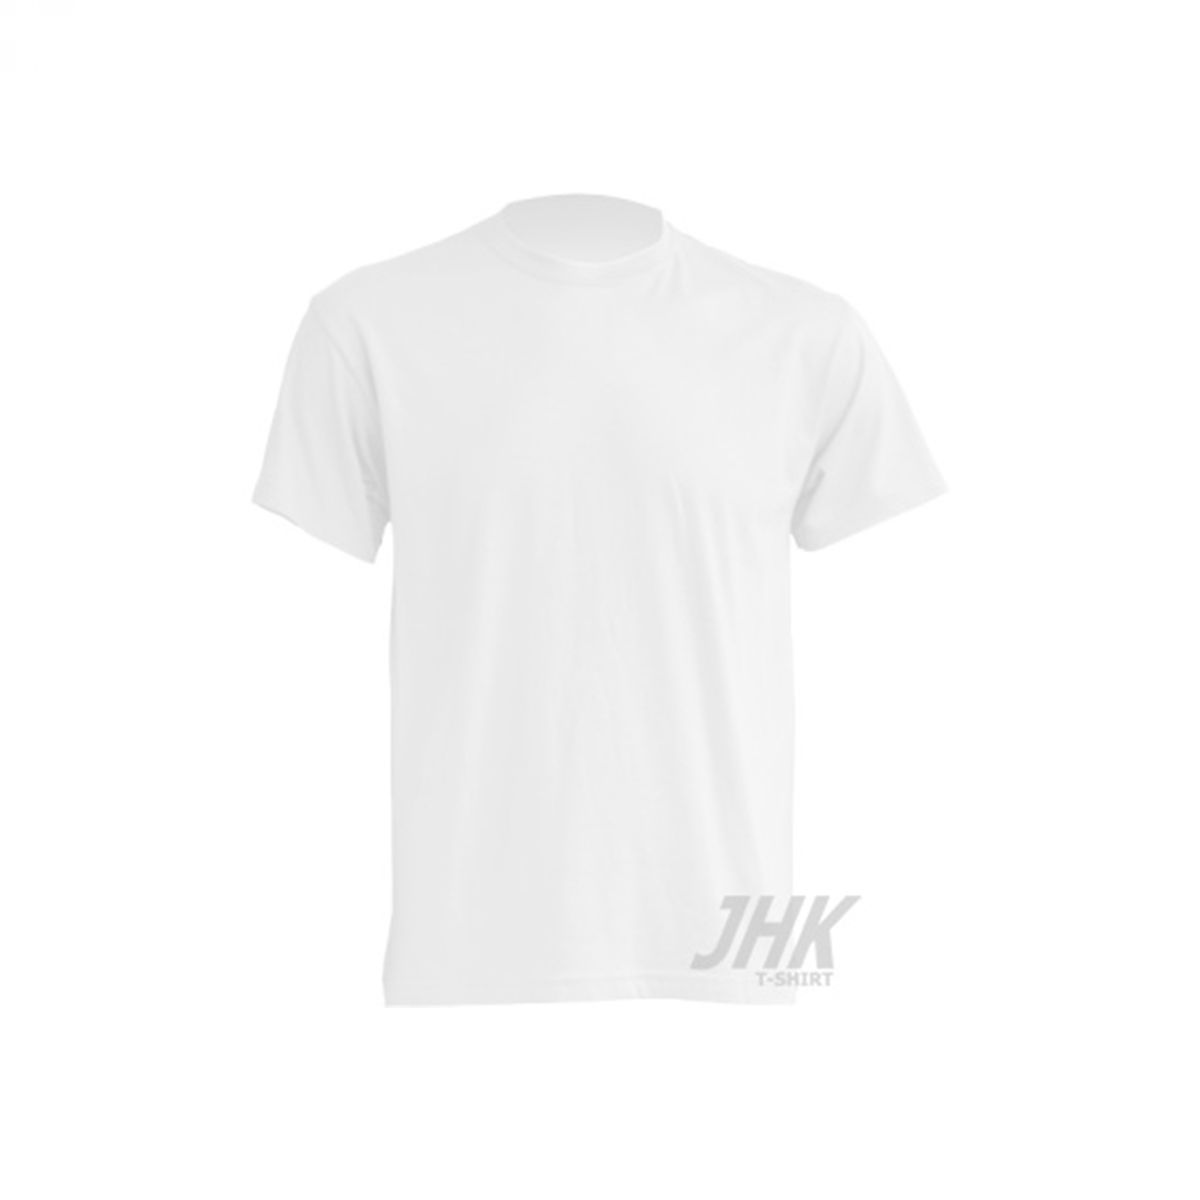 Majica kratki rukav T-shirt bijela